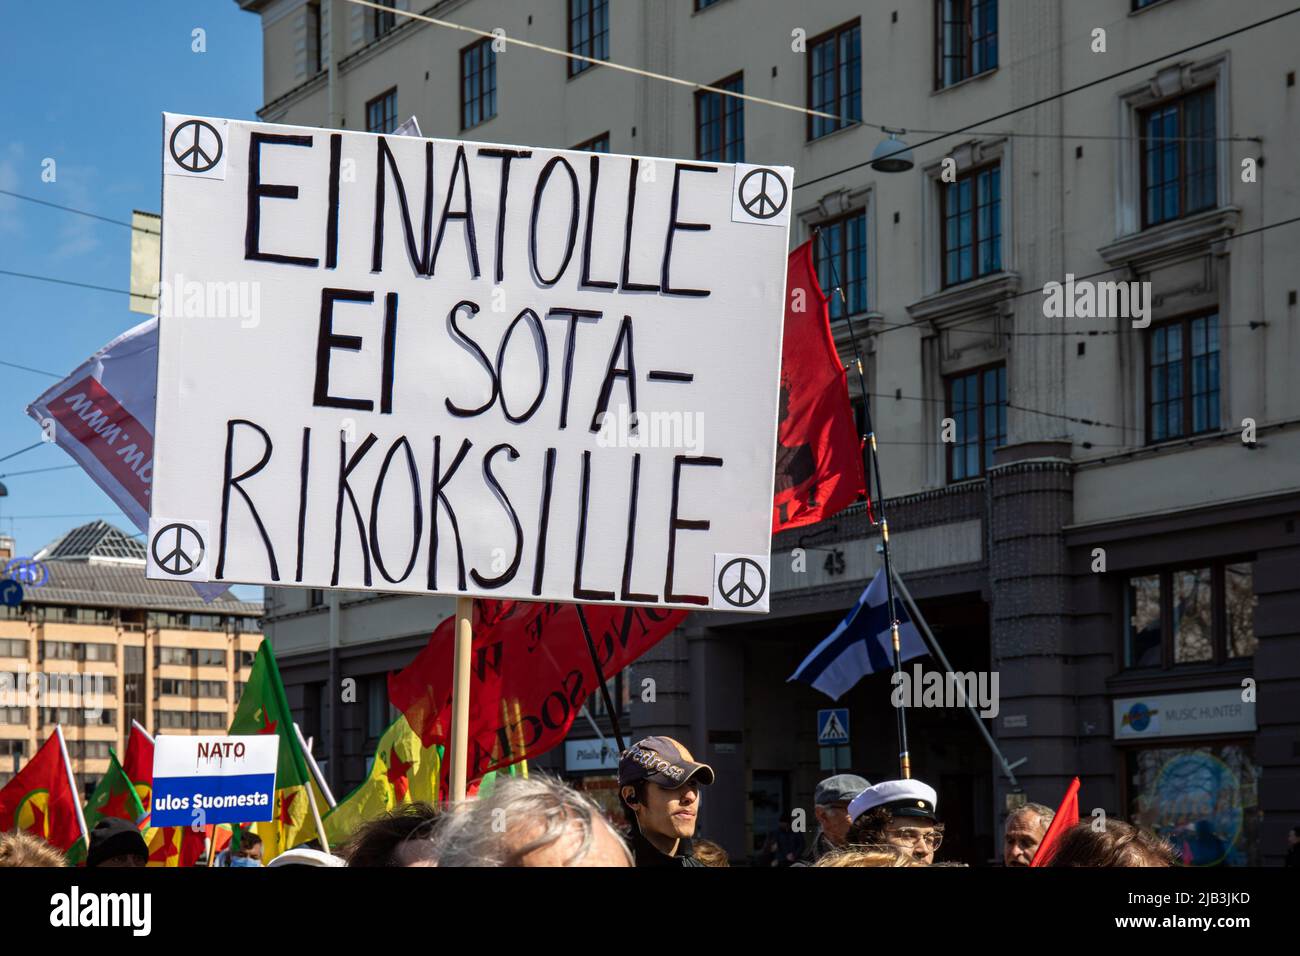 EI NATOLLE. Firma anti-NATO scritta a mano alla sfilata socialista del giorno di maggio nella Giornata Internazionale dei lavoratori a Helsinki, in Finlandia. Foto Stock